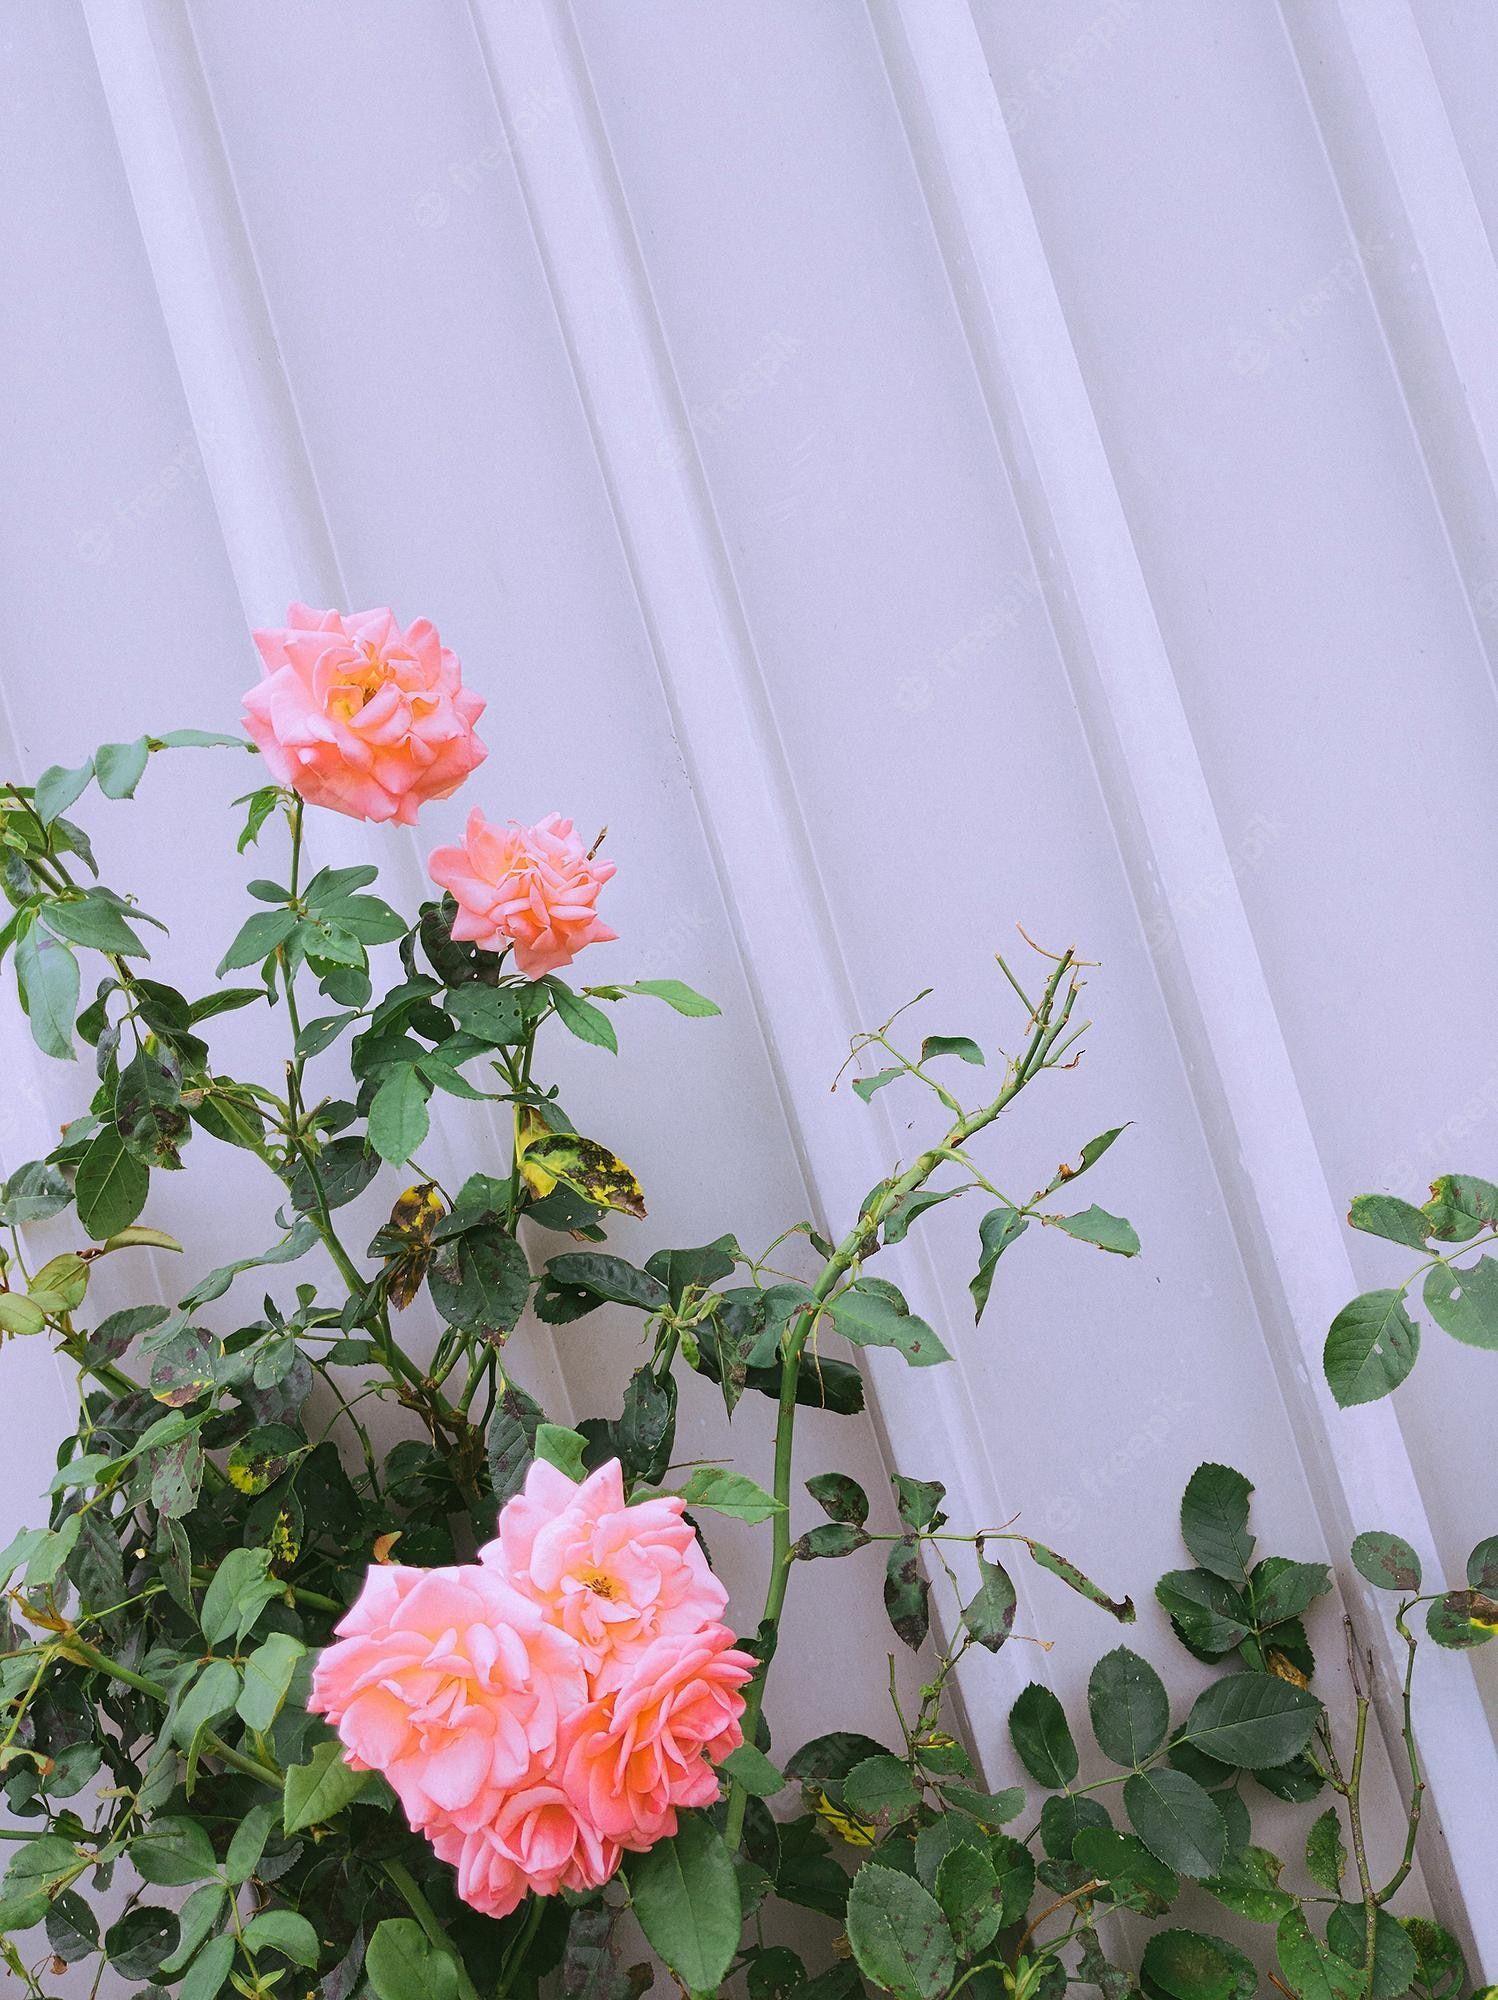  Minimalistisch Hintergrundbild 1498x2000. Stilvolle blumentapete rosen und graue wandtextur minimalistische ästhetik